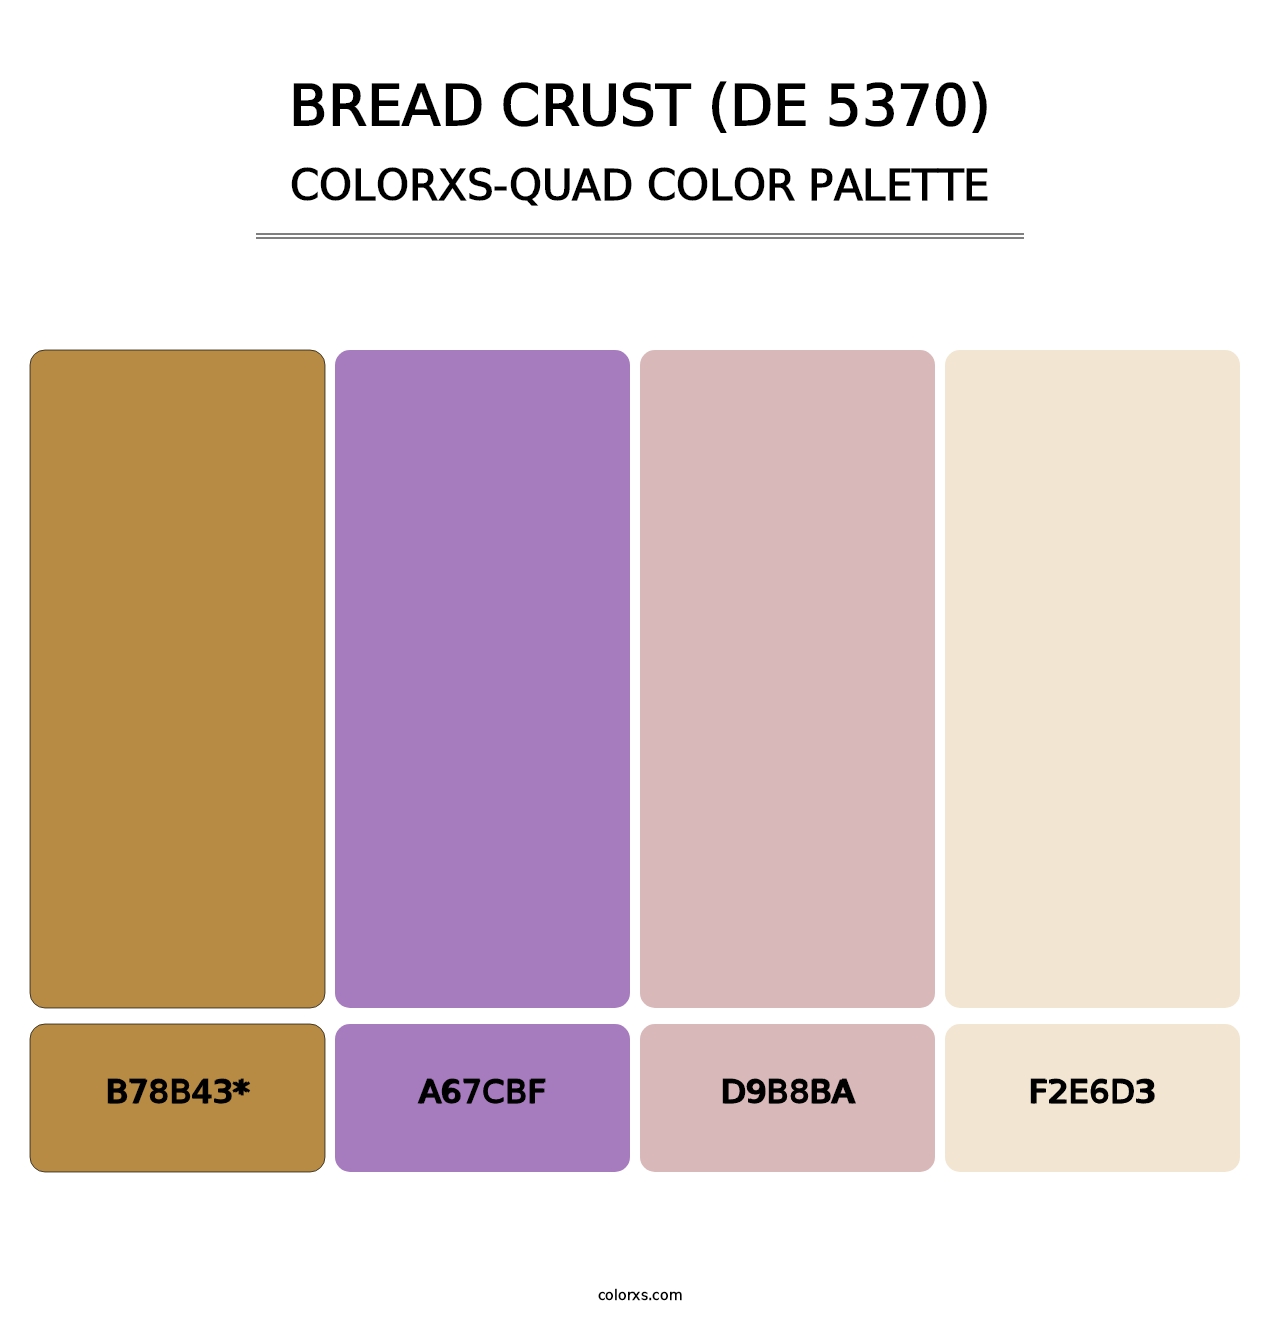 Bread Crust (DE 5370) - Colorxs Quad Palette